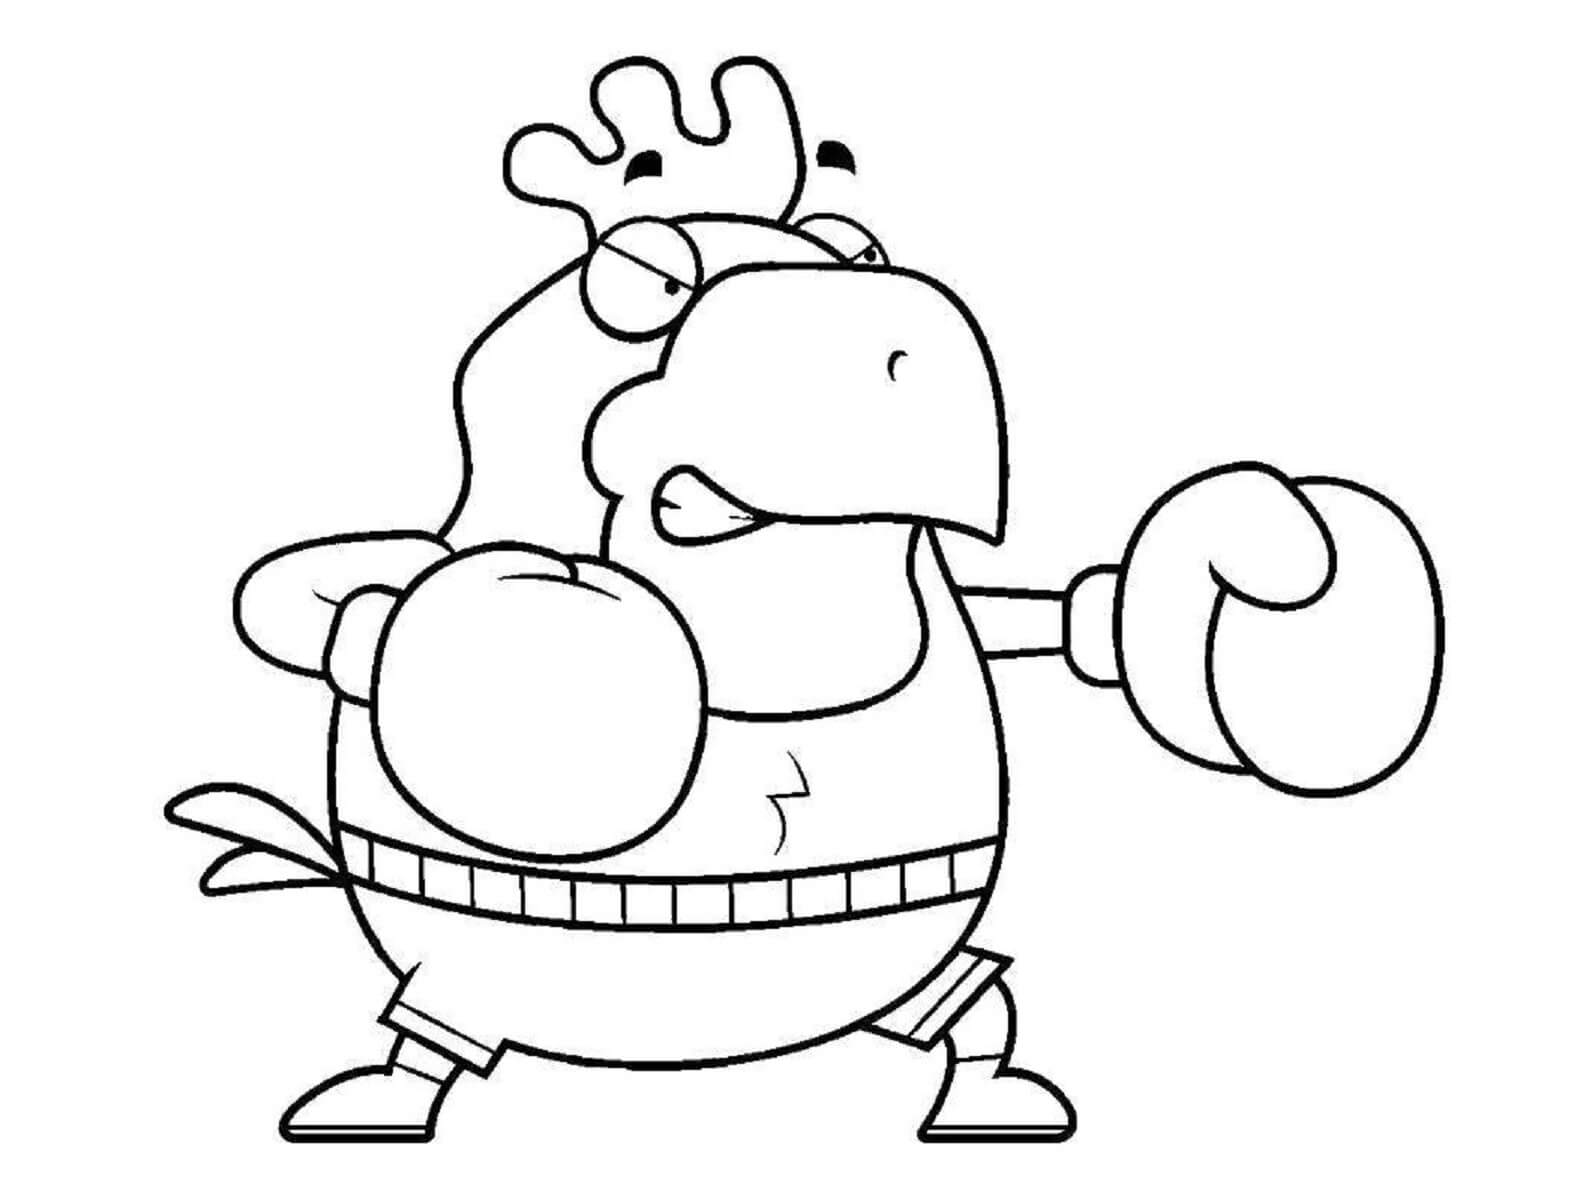 Cartoon Chicken Boxer coloring page